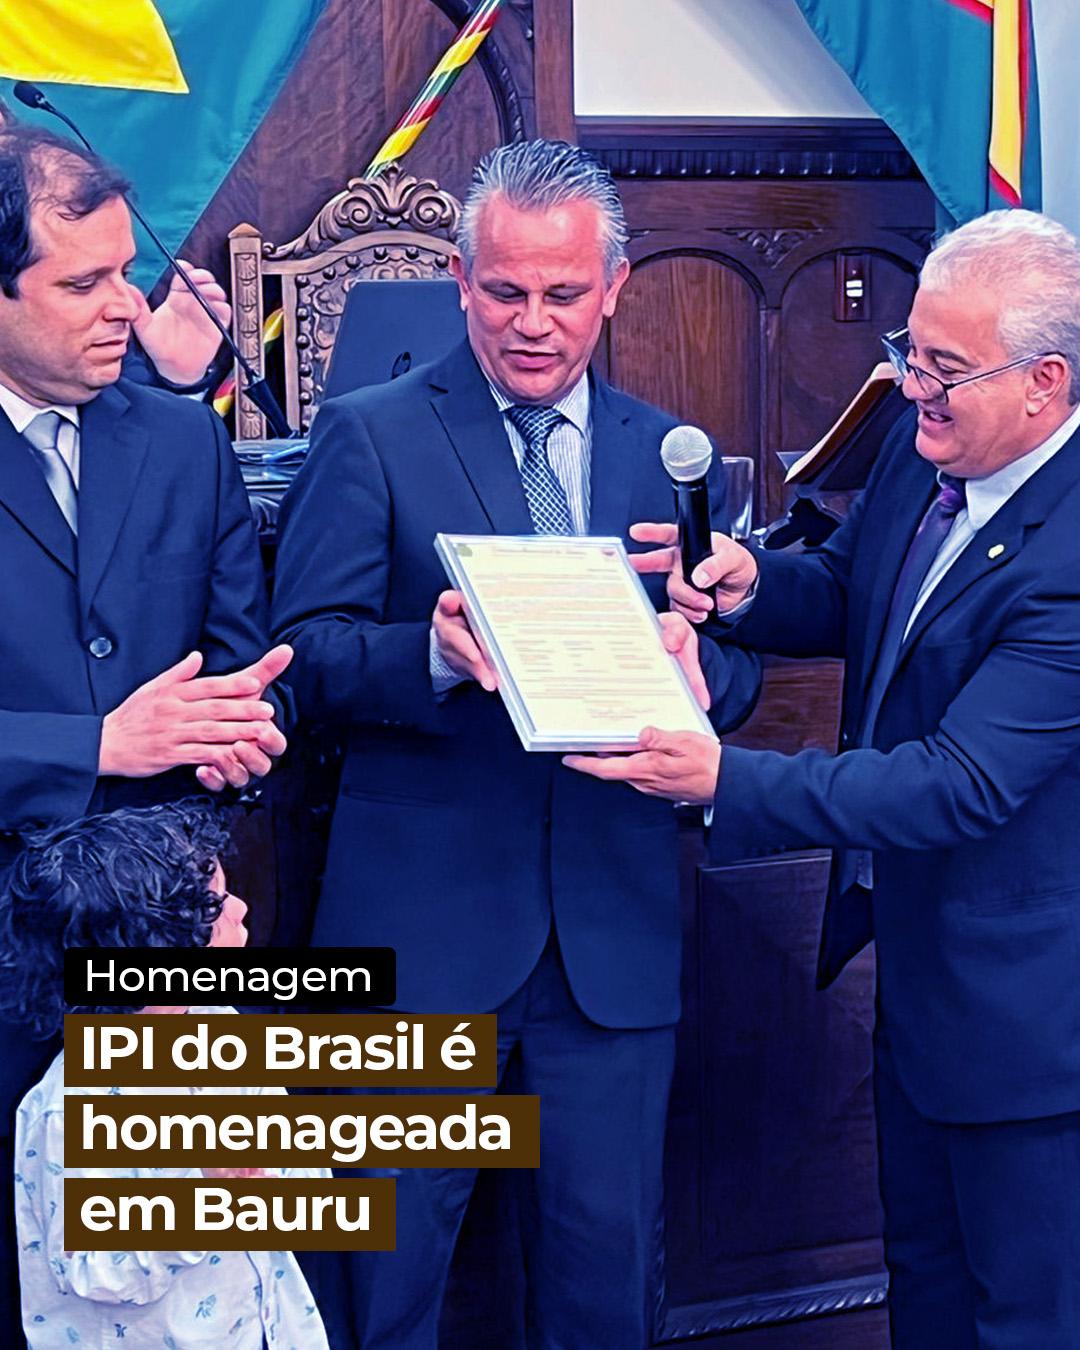 IPI do Brasil é homenageada em Bauru